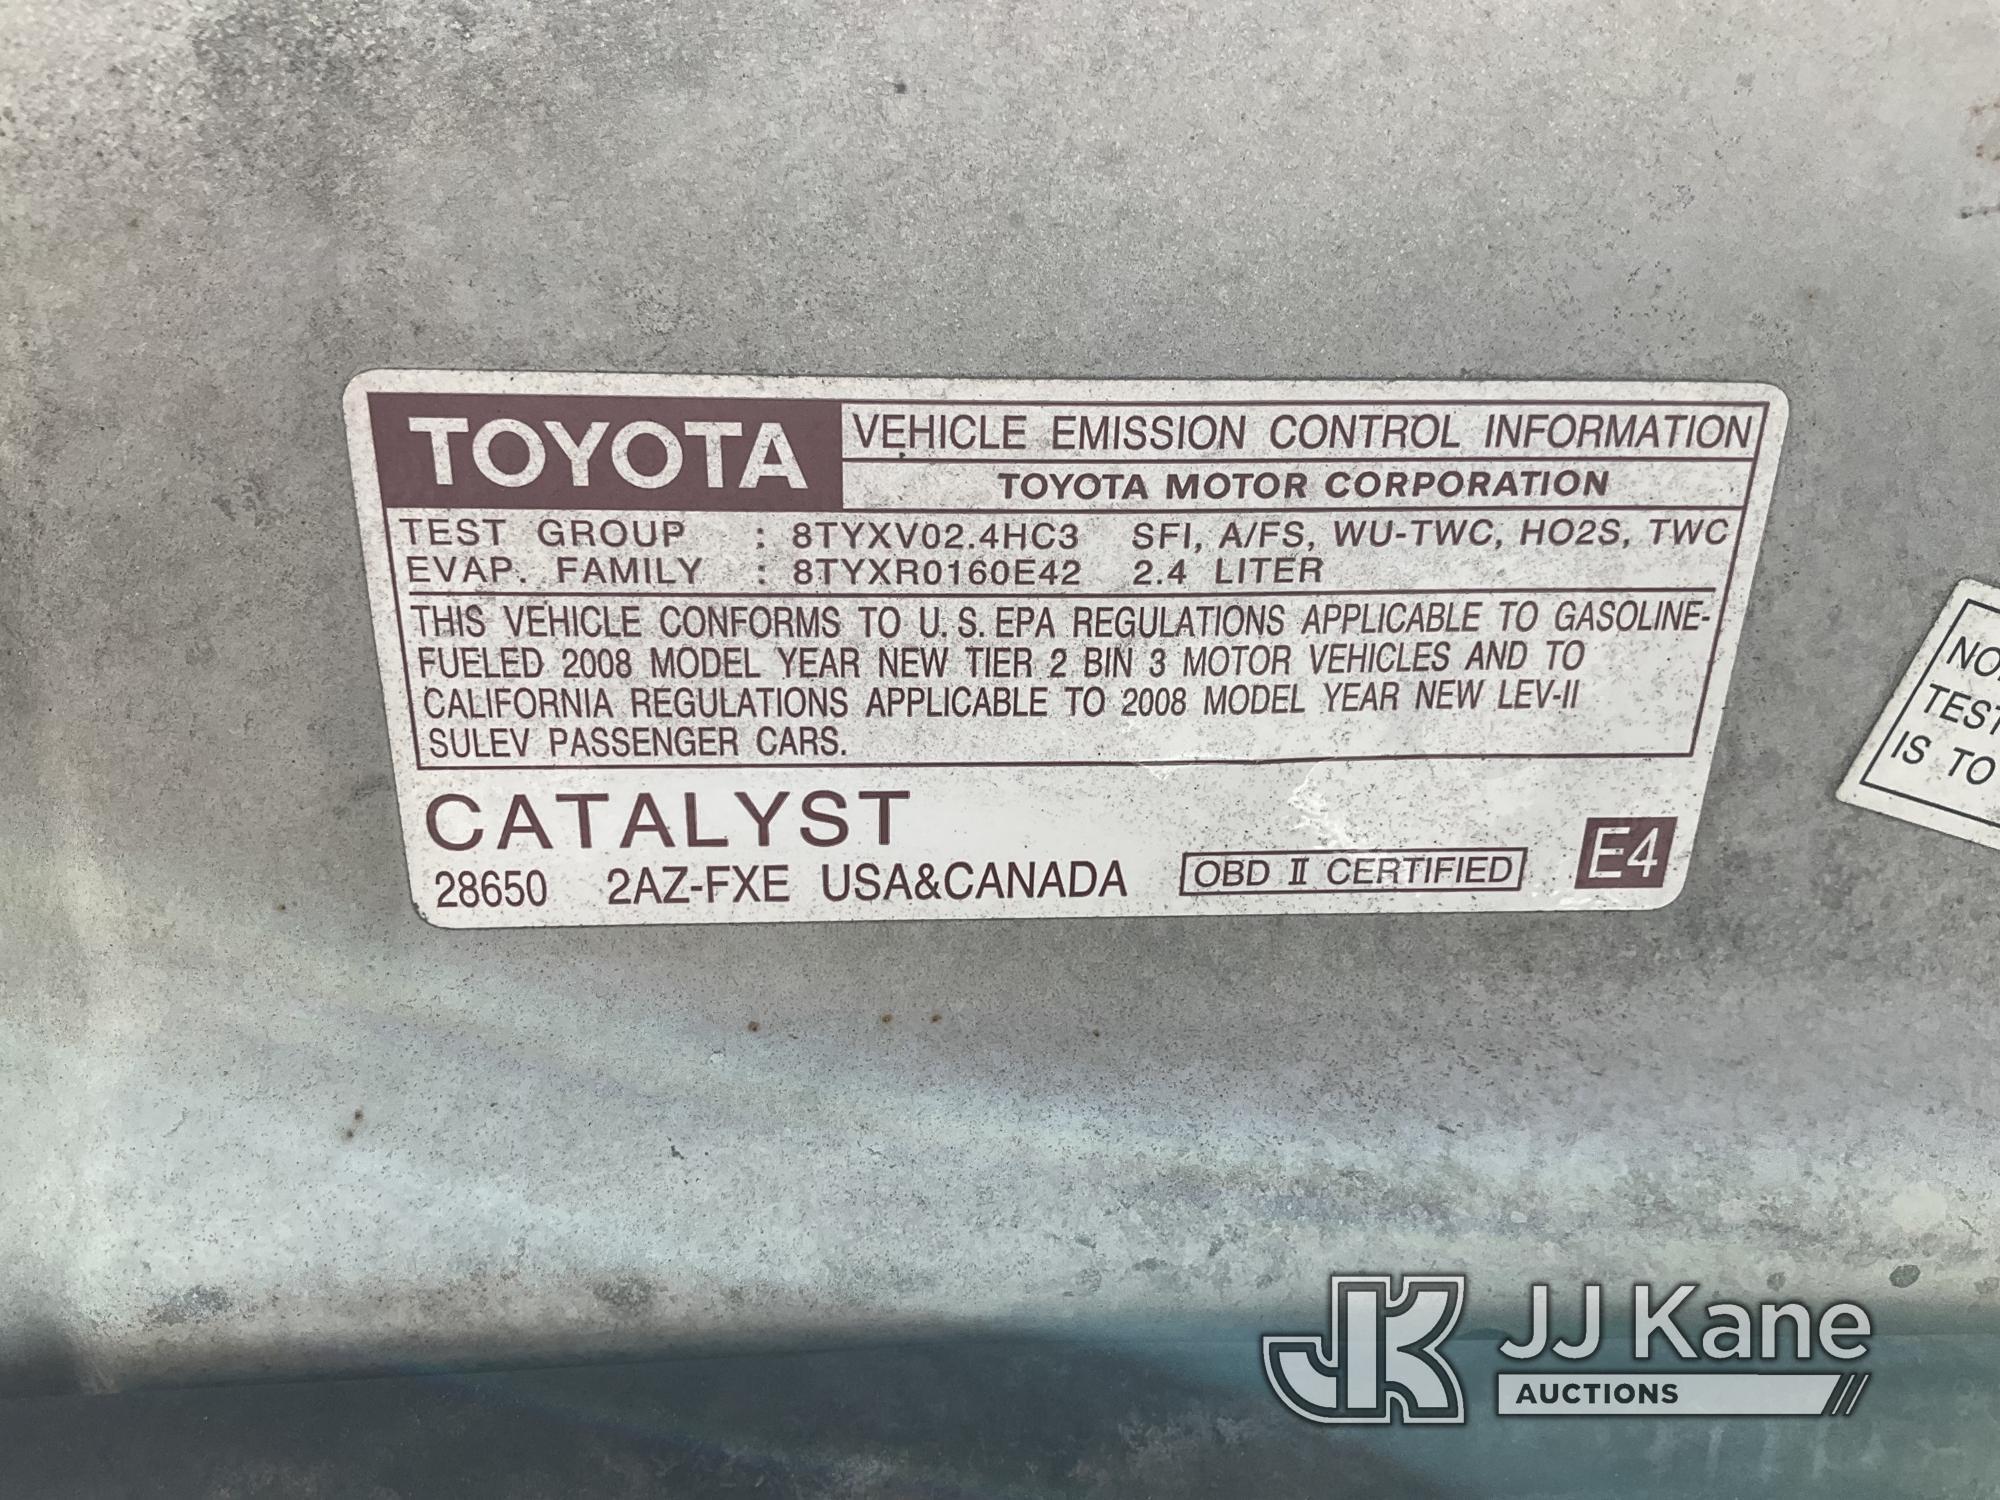 (Jurupa Valley, CA) 2008 Toyota Camry Hybrid 4-Door Sedan Runs & Moves, Has Check Engine Light On